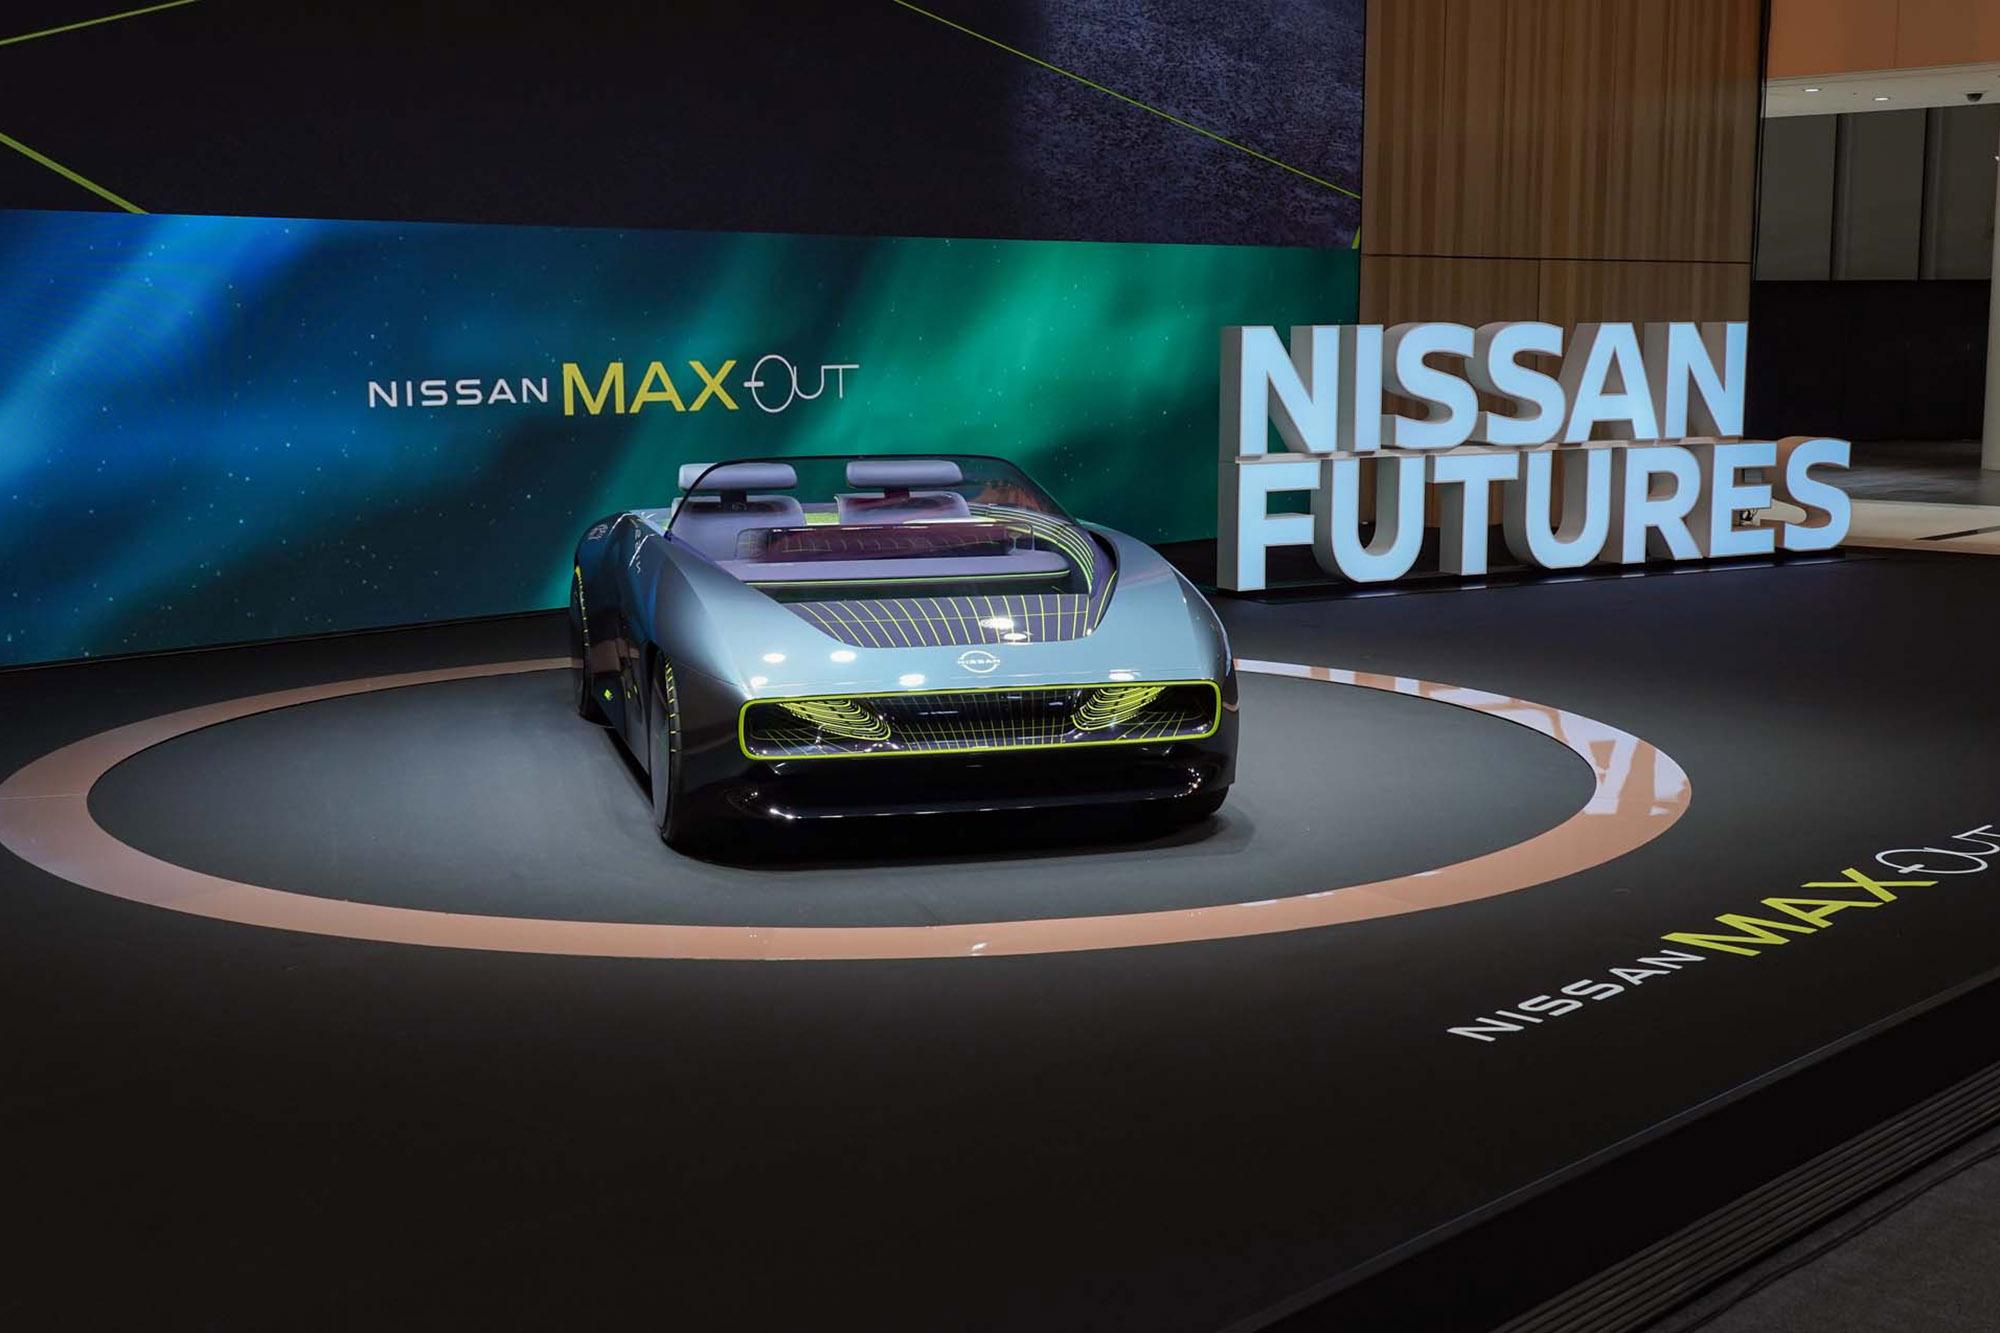 Nissan Max-Out, από την εικονική πραγματικότητα στην αληθινή ζωή